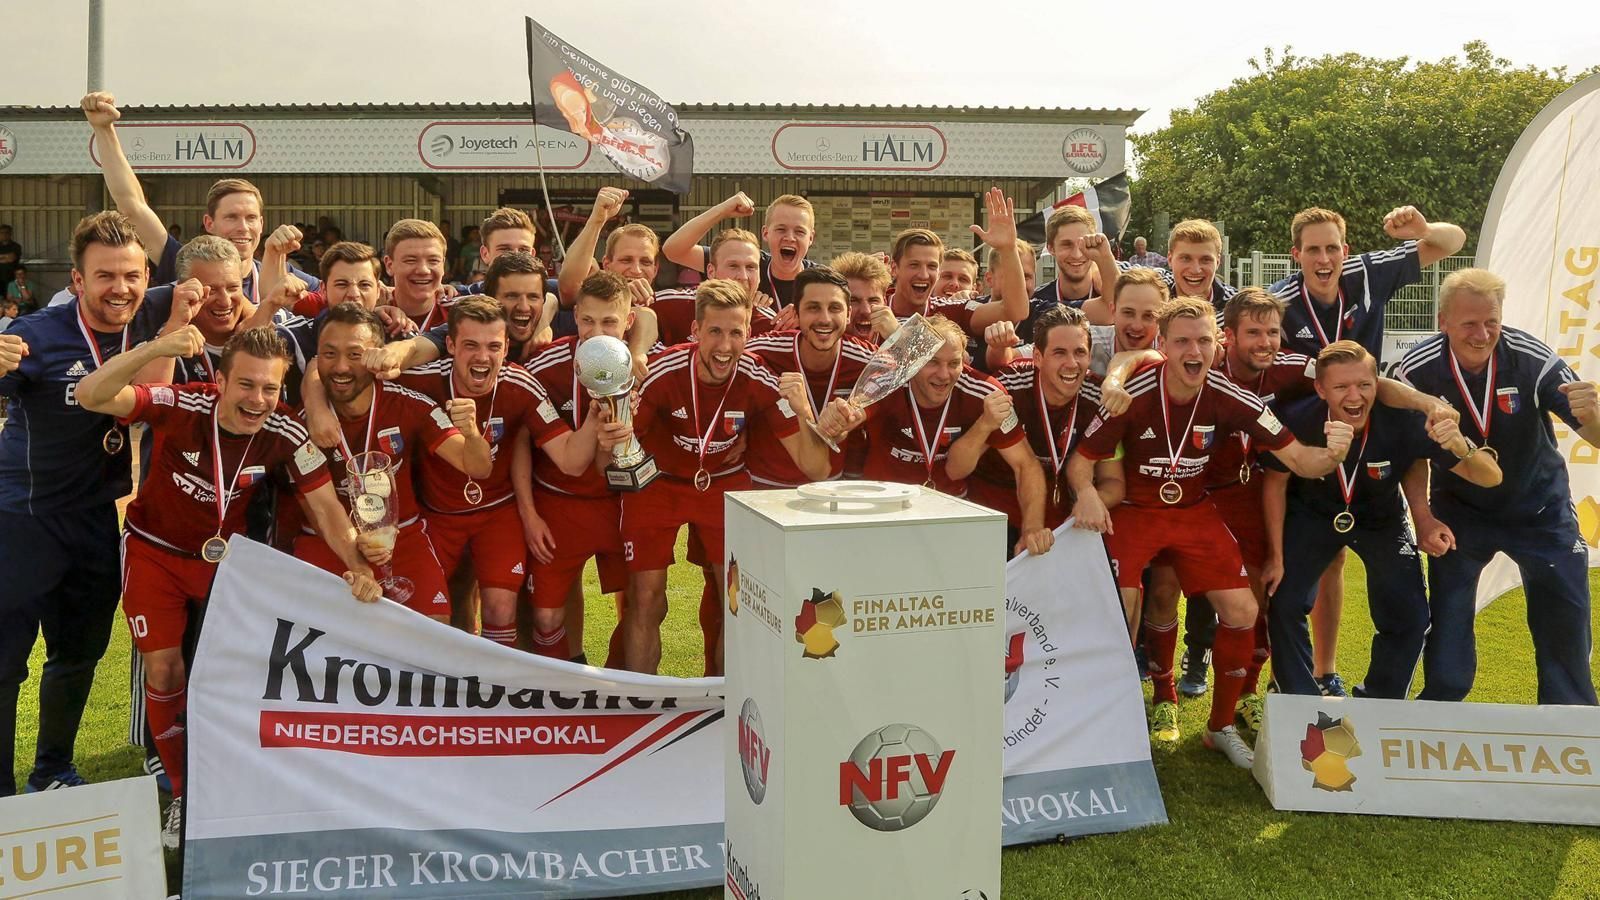 
                <strong>Größten Erfolge</strong><br>
                Seit dem Aufstieg im Jahr 2015 spielt die SV Drochtersen/Assel in der Regionalliga Nord. Im darauffolgenden Jahr gewann der Verein, 45 km nordwestlich von Hamburg liegend, mit einem 2:0 gegen den 1. FC Germania Egestorf-Langreder erstmals den Niedersachsenpokal. Im Mai 2018 wiederholten sie den Triumph dank eines 5:1-Finalsieges gegen den SSV Jeddeloh. Nach fünf Spieltagen in der laufenden Saison belegt die SV Drochtersen/Assel derzeit den zweiten Tabellenplatz.
              